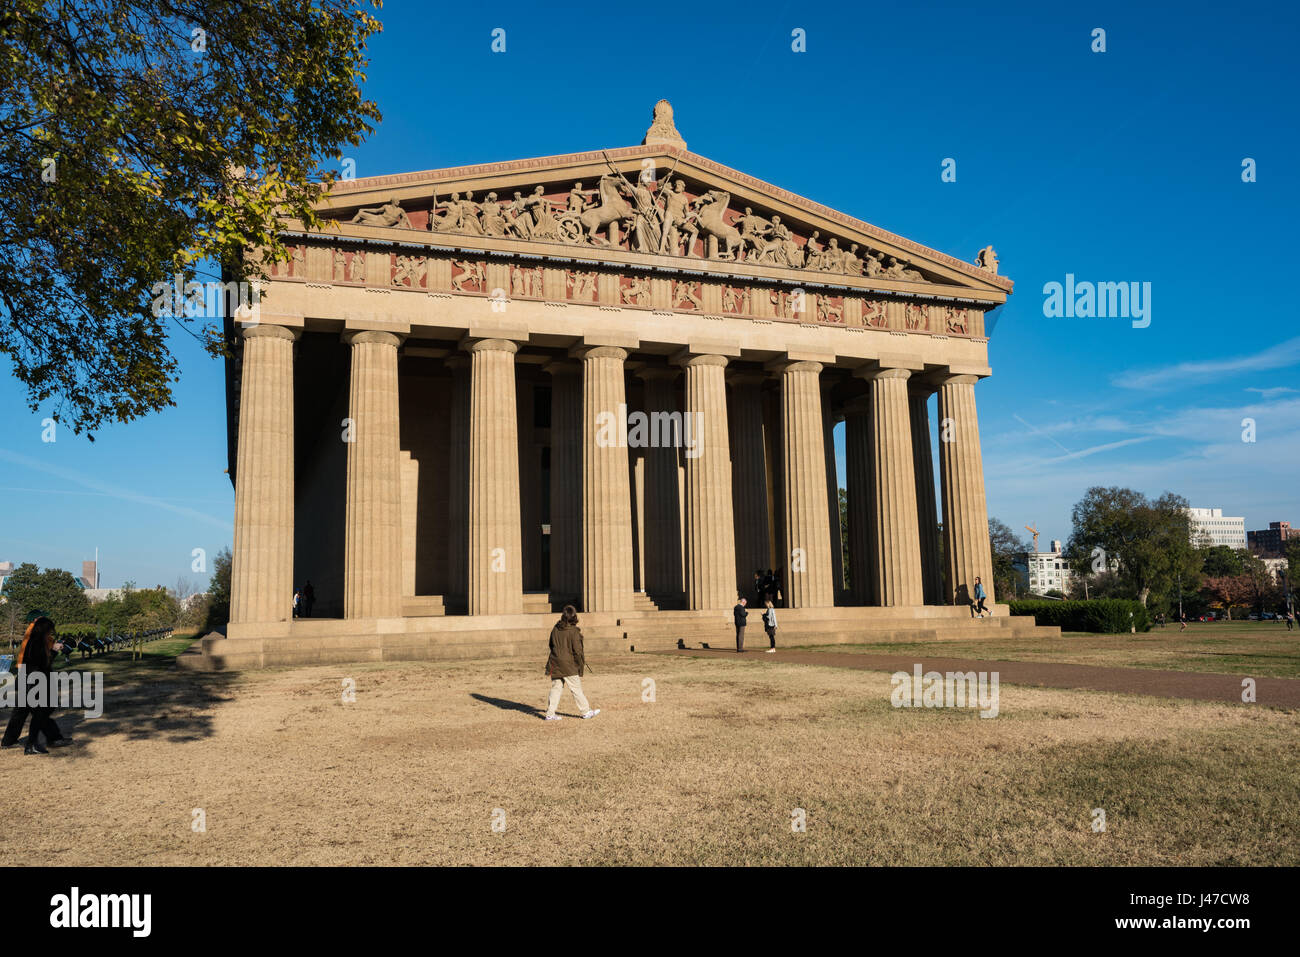 Replica of the Parthenon in Nashville's Centennial Park Stock Photo